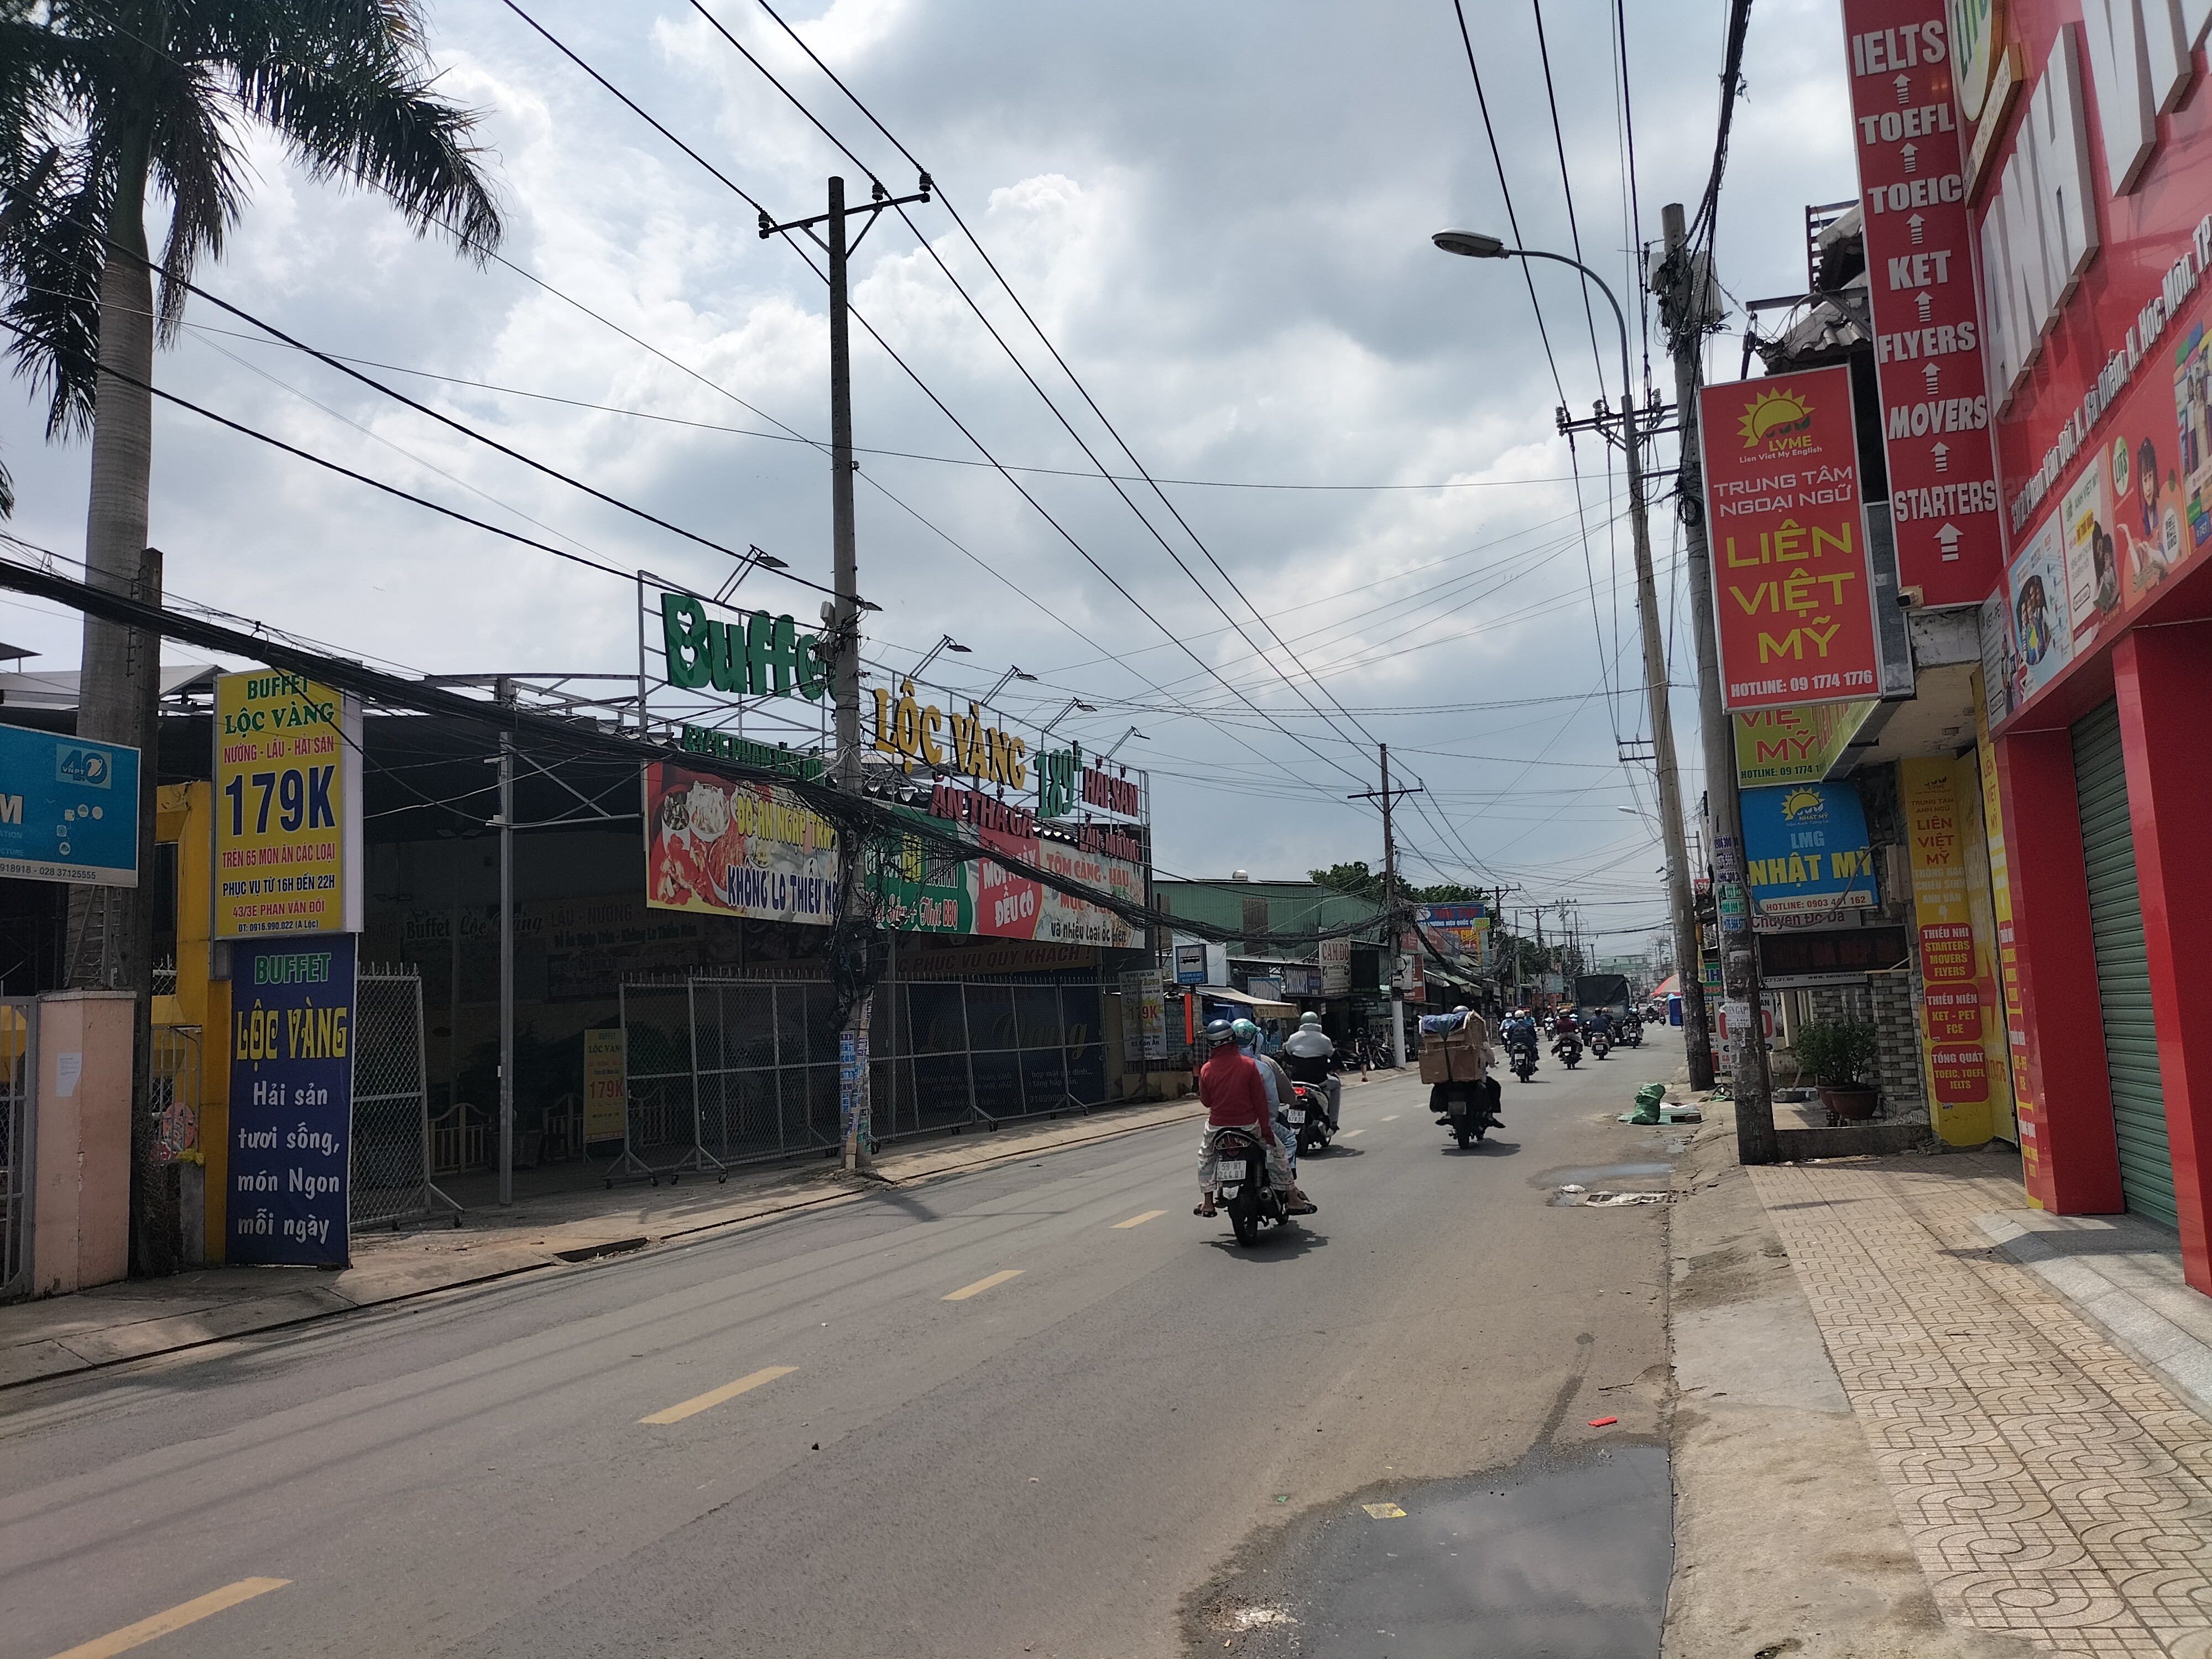 Bán nhà mặt tiền Phan Văn Đối, đường đẹp nhộn nhịp kinh doanh đa ngành nghề, kết nối quốc lộ 1A từ 1